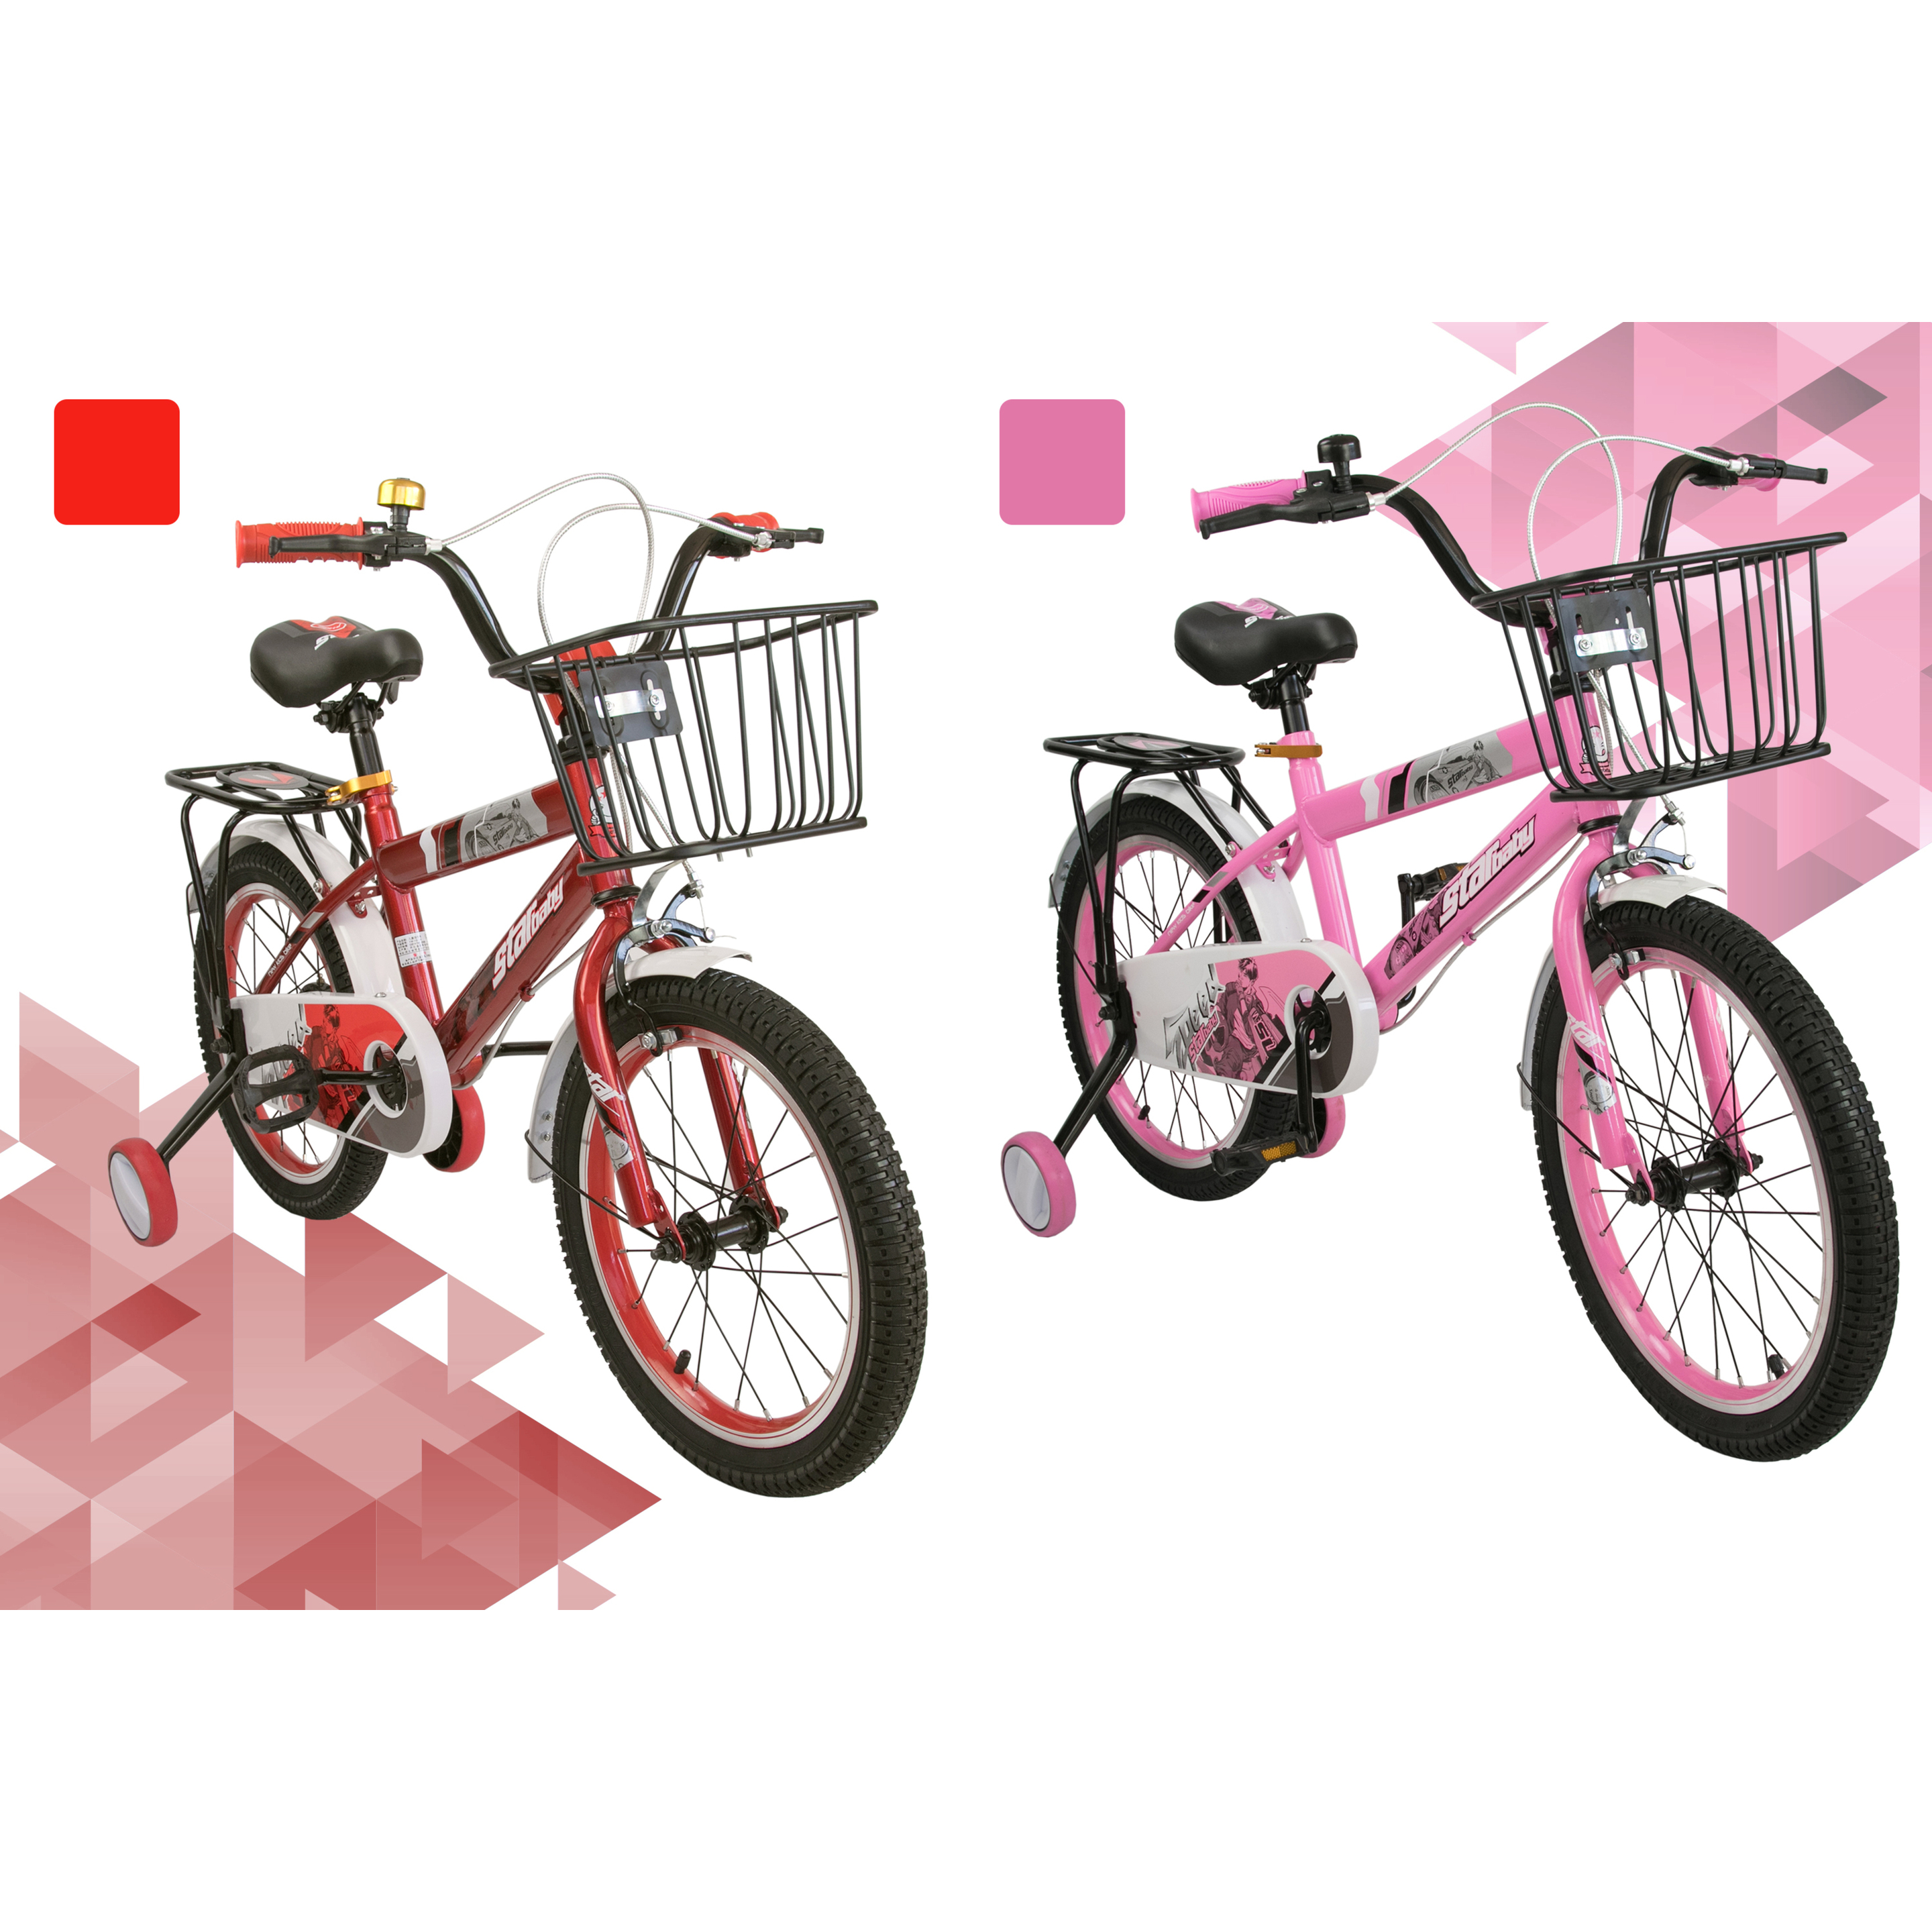 Airel Bicicletas Infantiles Para Niños Y Niñas De 4 A 7 Años Con Ruedines Y Cesta | 18 Pulgadas